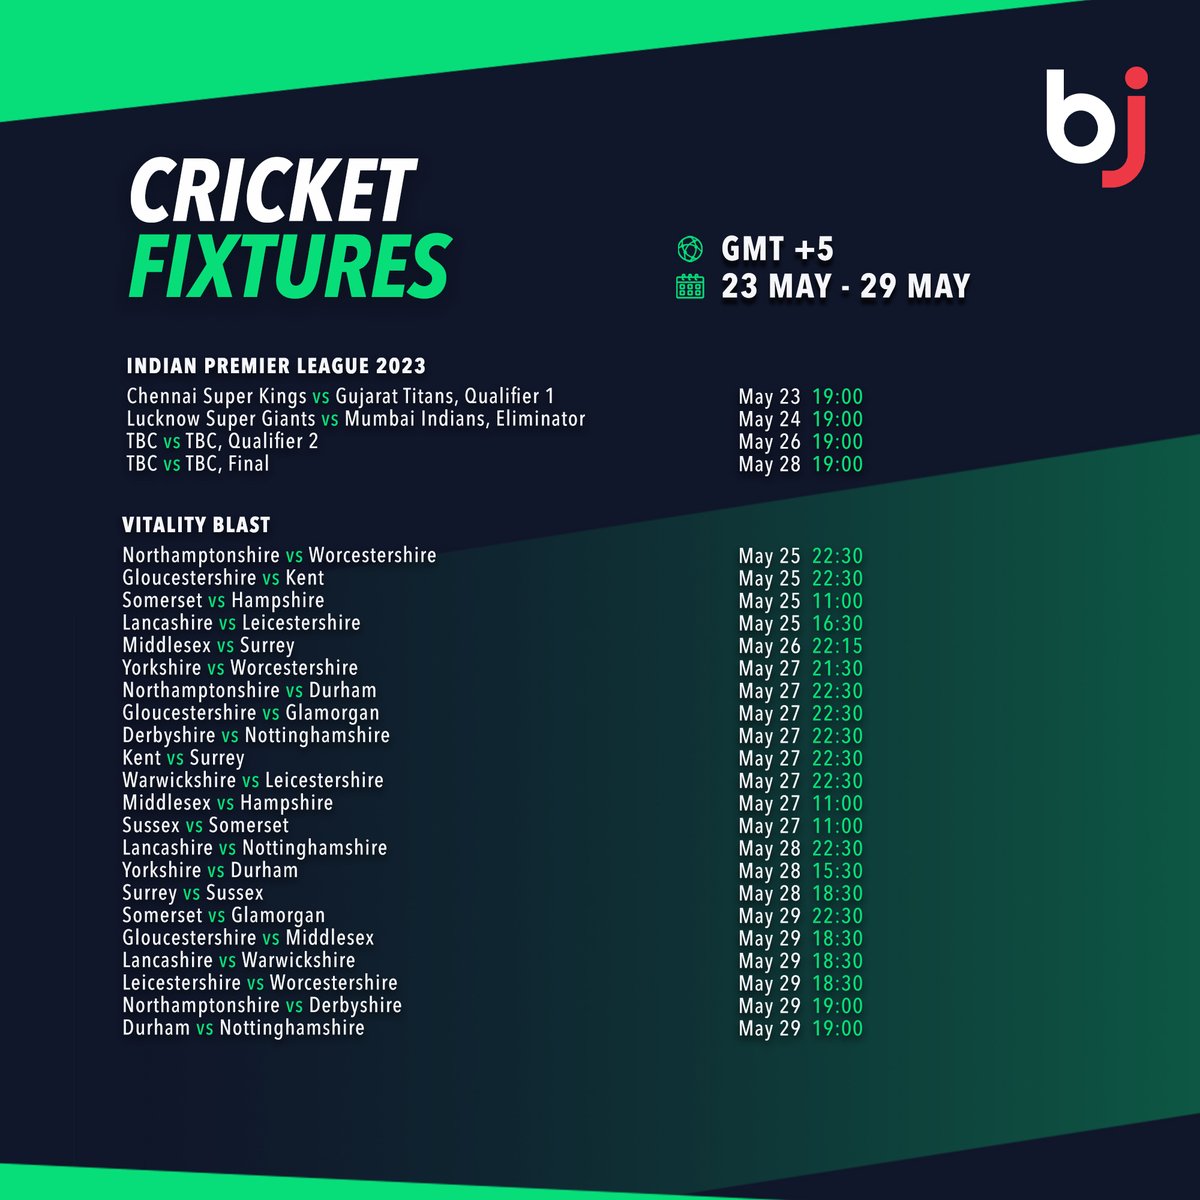 صرف Baji پرایک نظرمیں IPL سیزن 2023 کے اگلے ہفتے کے آخری چار میچوں اور وٹیلیٹی بلاسٹ لیگ میچ شیڈول دیکھیں
 
 💥 ابھی BjBaji5.com ممبر کے طور پر رجسٹر ہوں!!💥 

#Baji #BJ #Sports #Cricket #Schedule #CricketFixture #IPL2023 #VitalityBlast